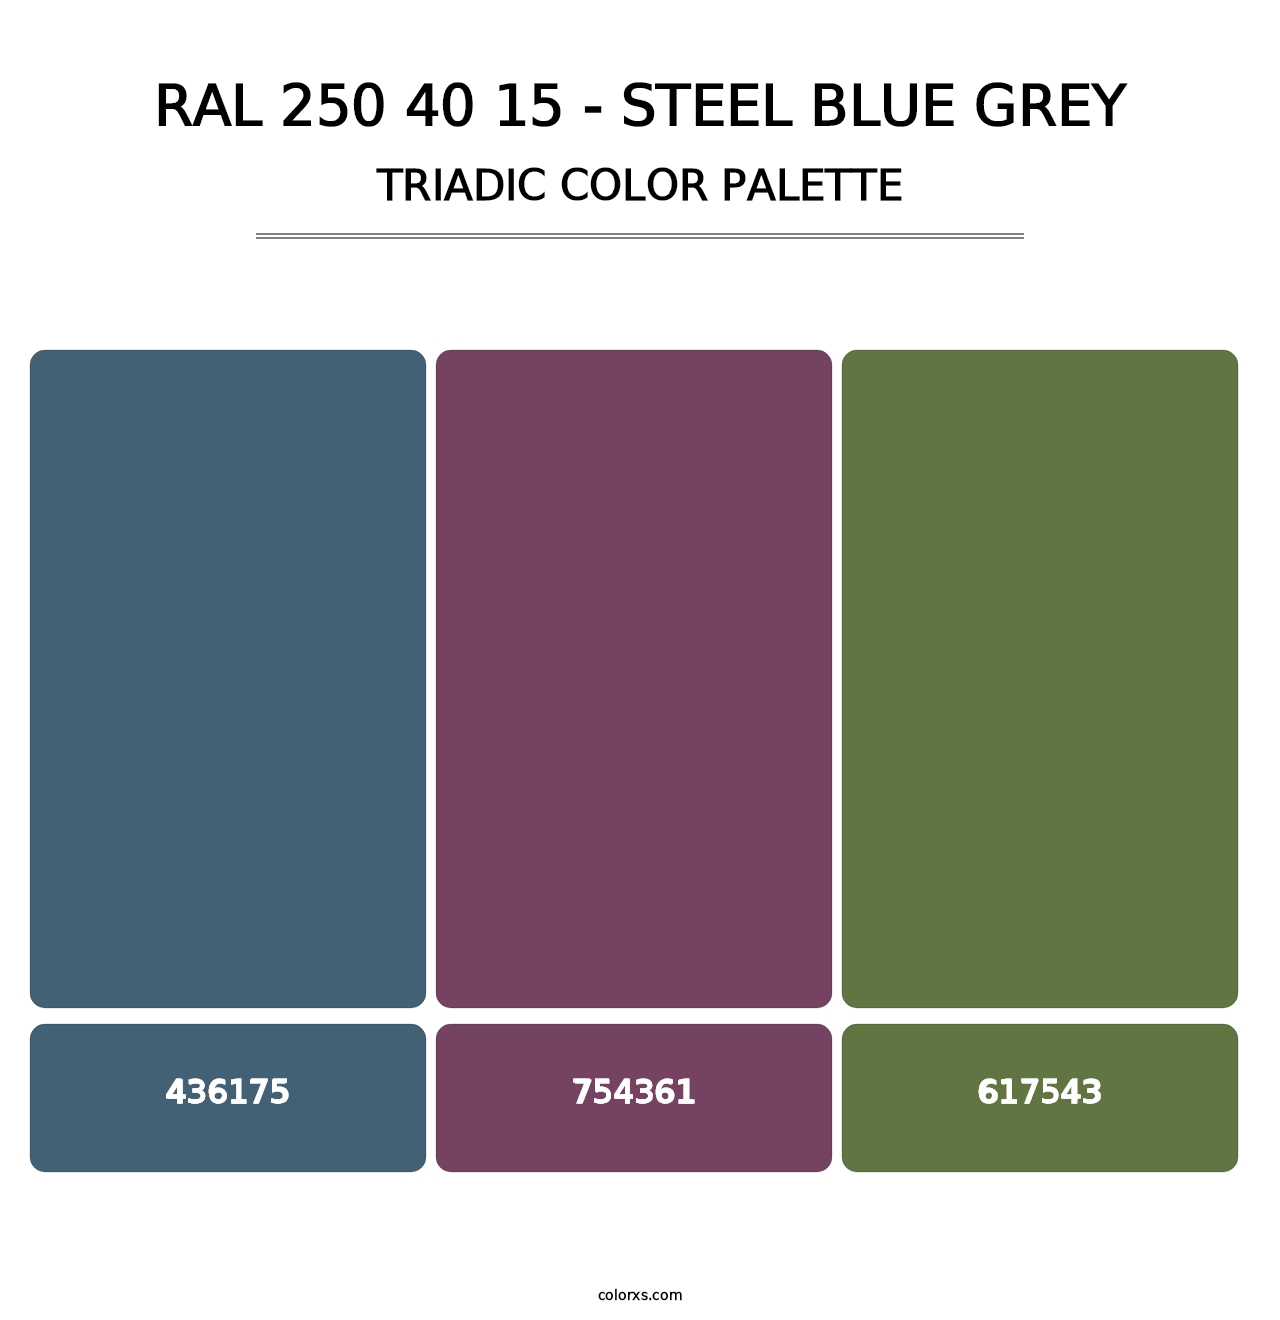 RAL 250 40 15 - Steel Blue Grey - Triadic Color Palette